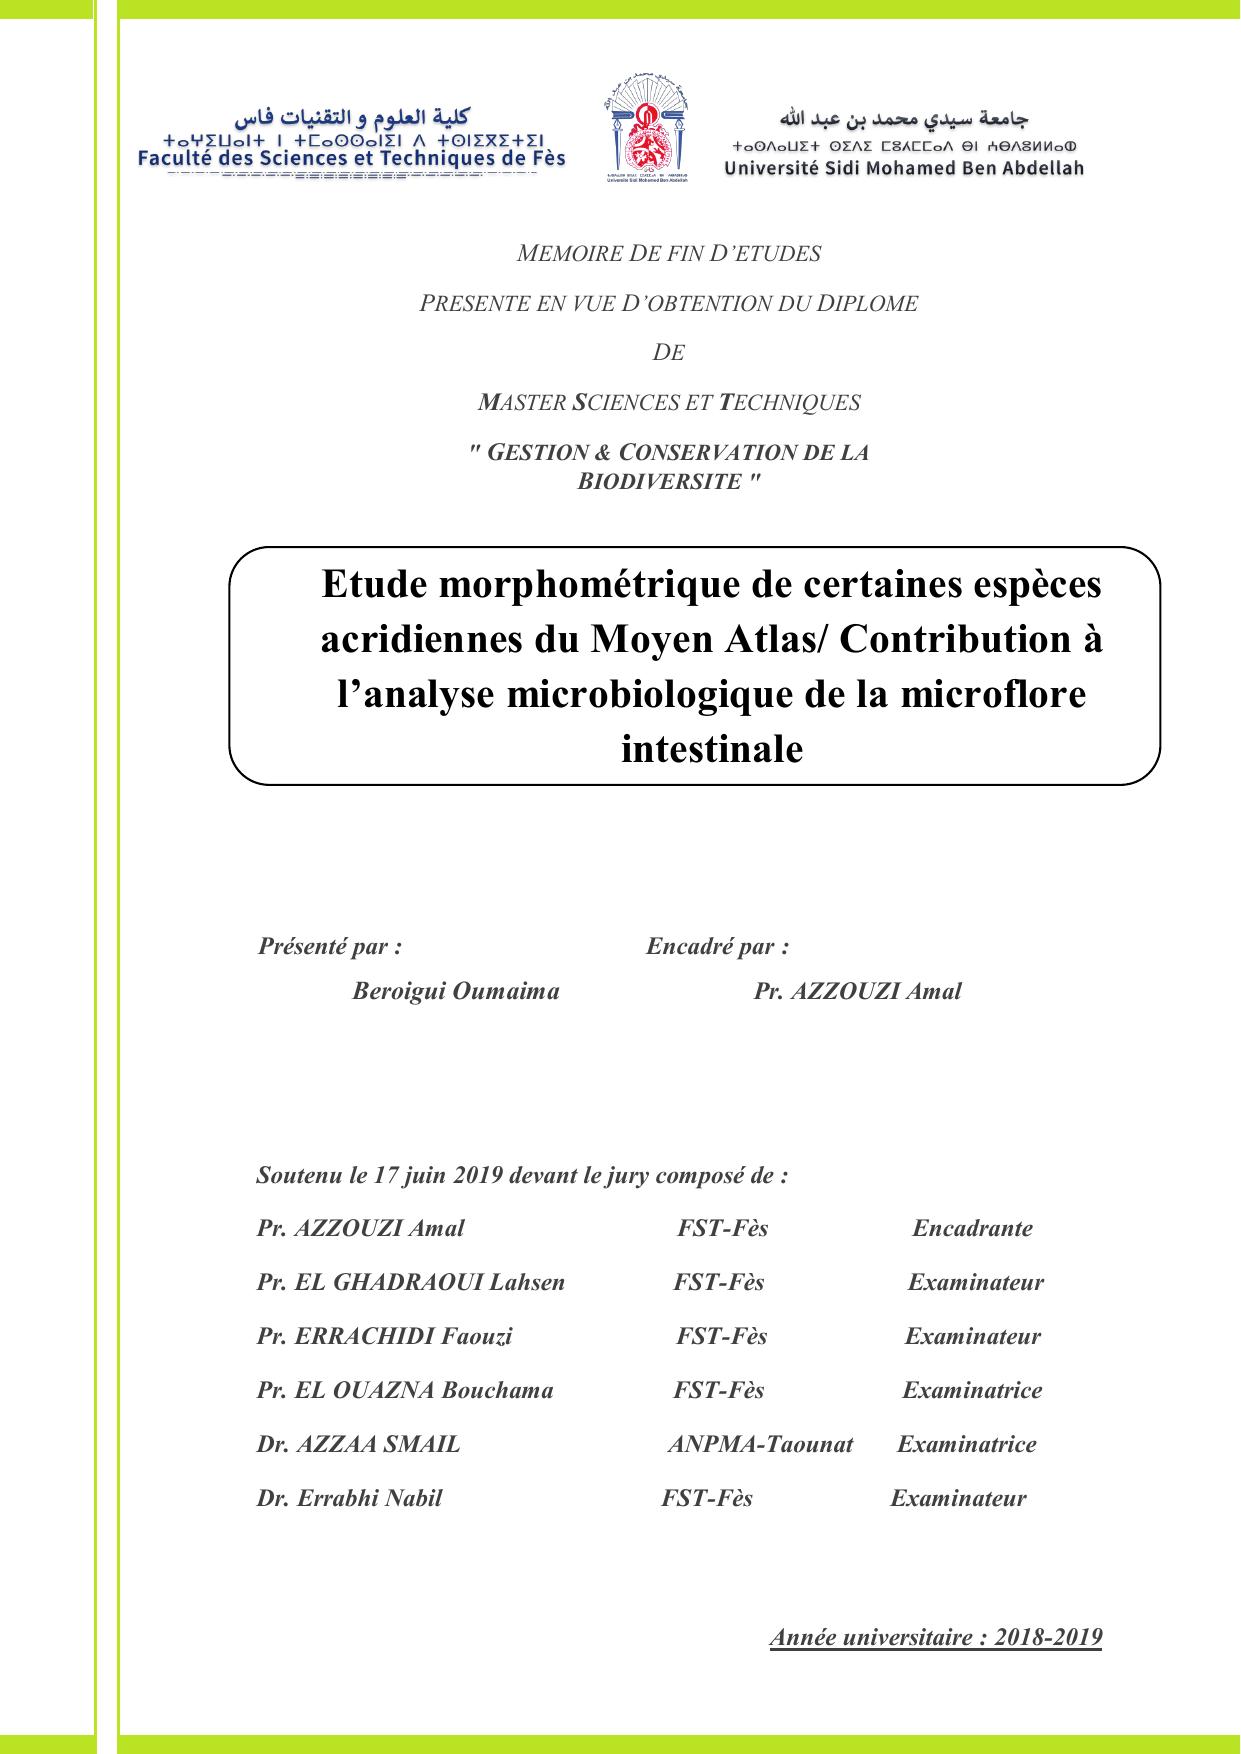 Etude morphométrique de certaines espèces acridiennes du Moyen Atlas et contribution à l'analyse microbiologique de la microflore intestinale